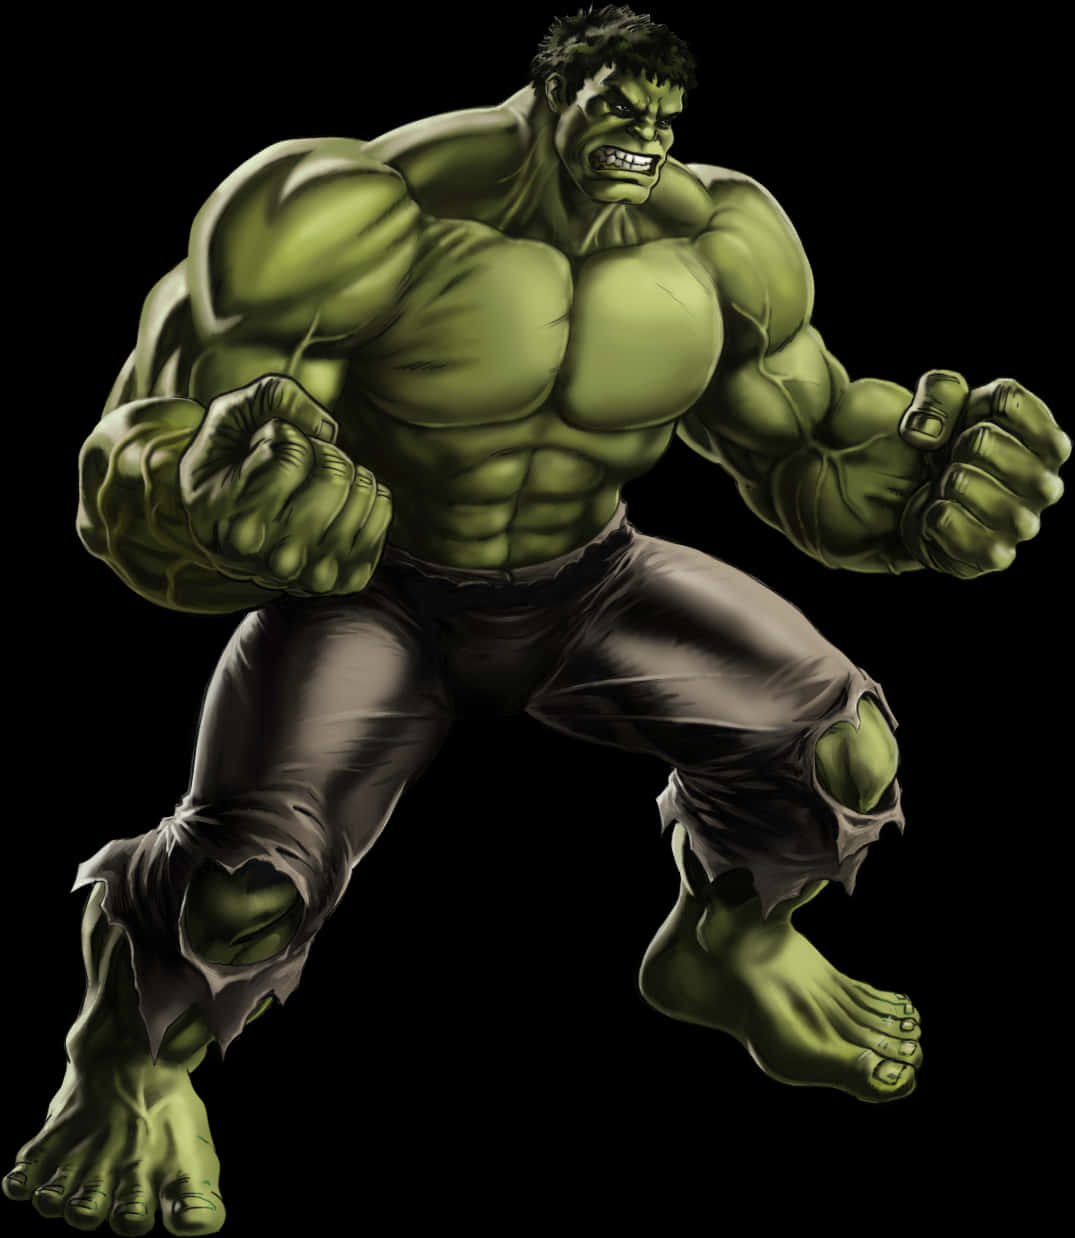 A Cartoon Of A Green Hulk